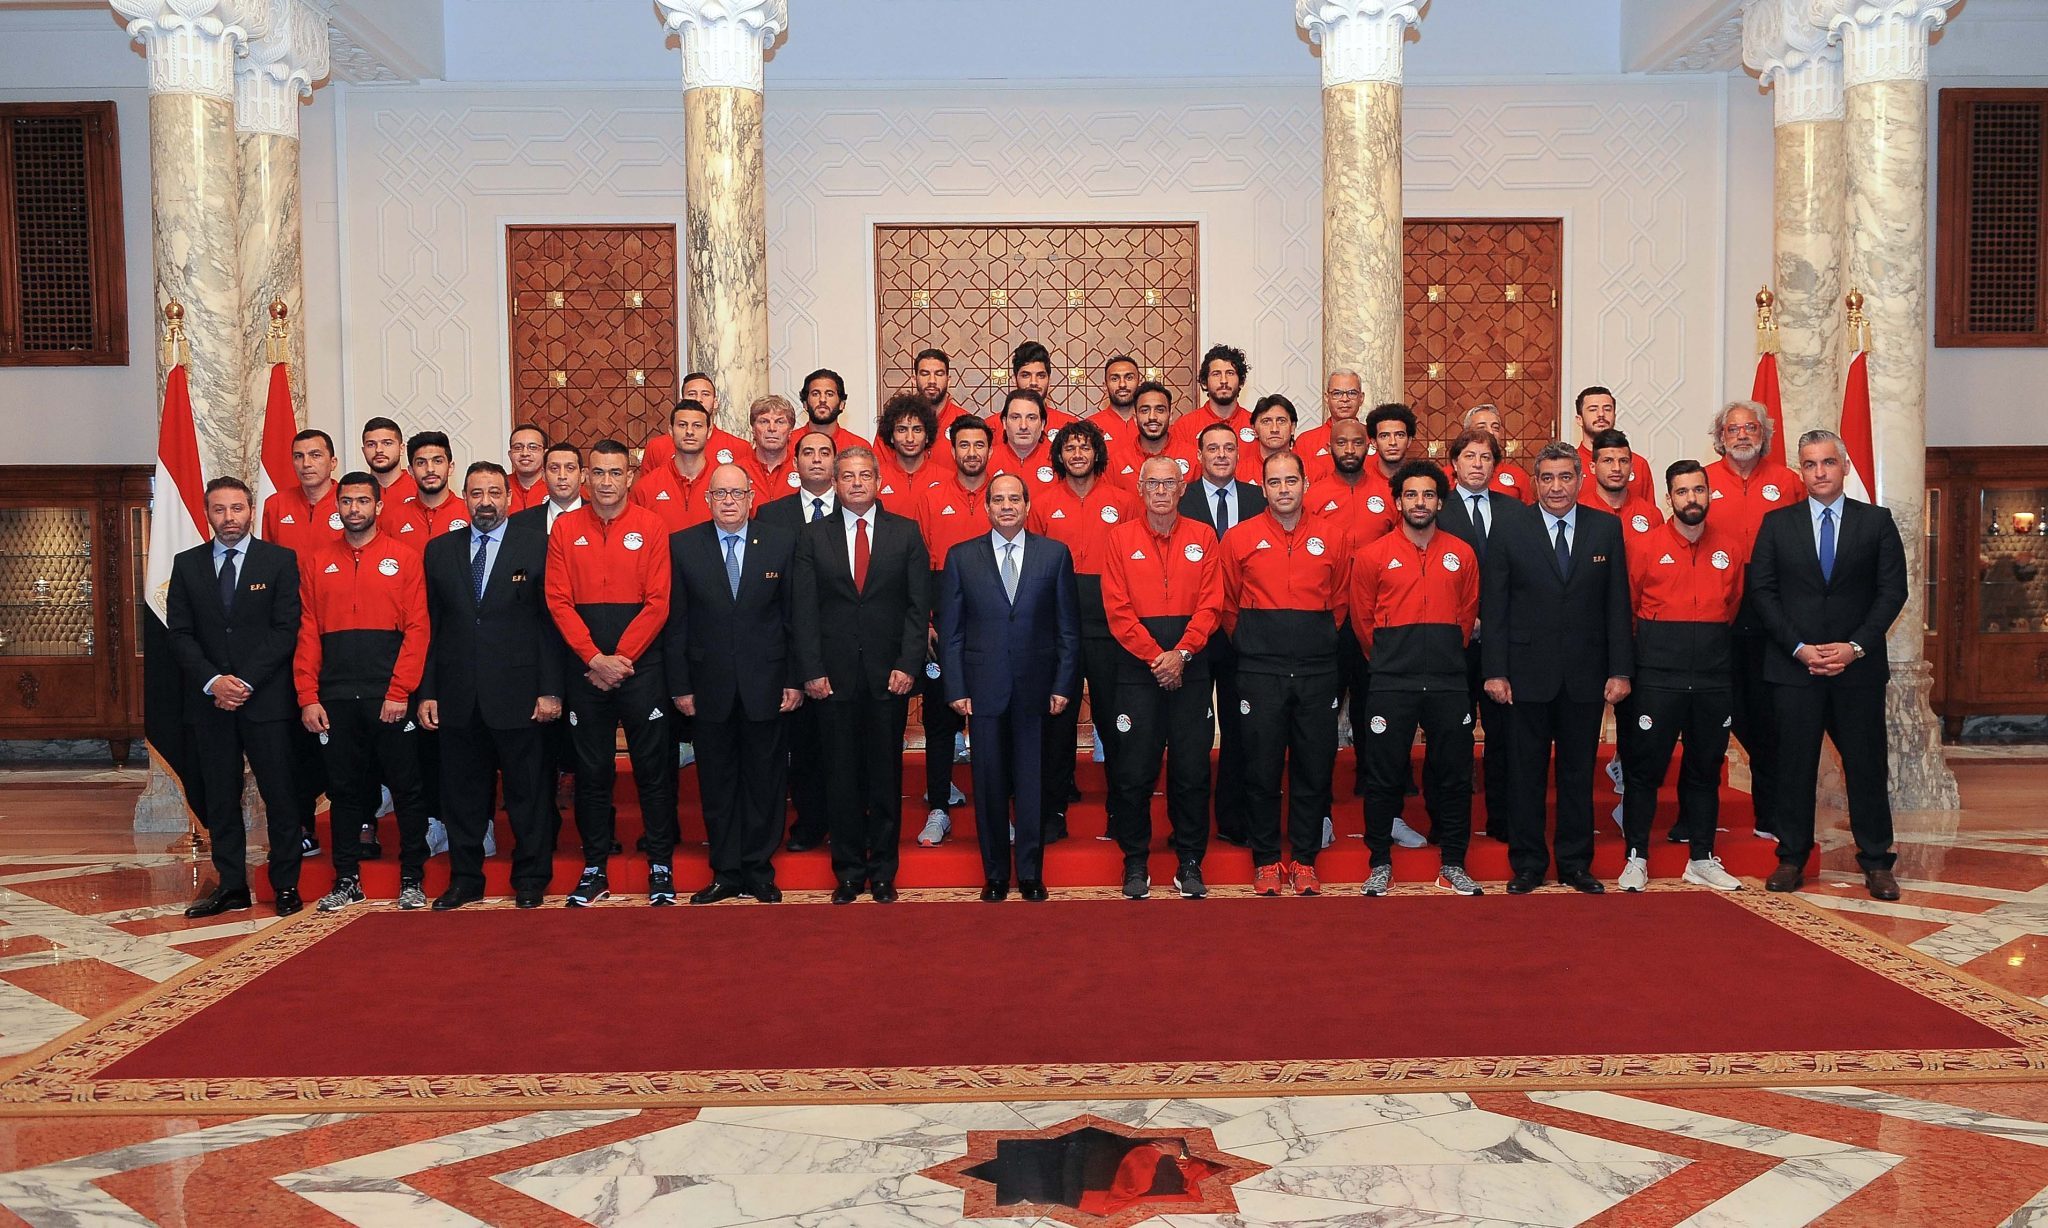   الرئيس يستقبل أعضاء بعثة المنتخب الوطني لكرة القدم المشاركة في بطولة كأس العالم روسيا 2018